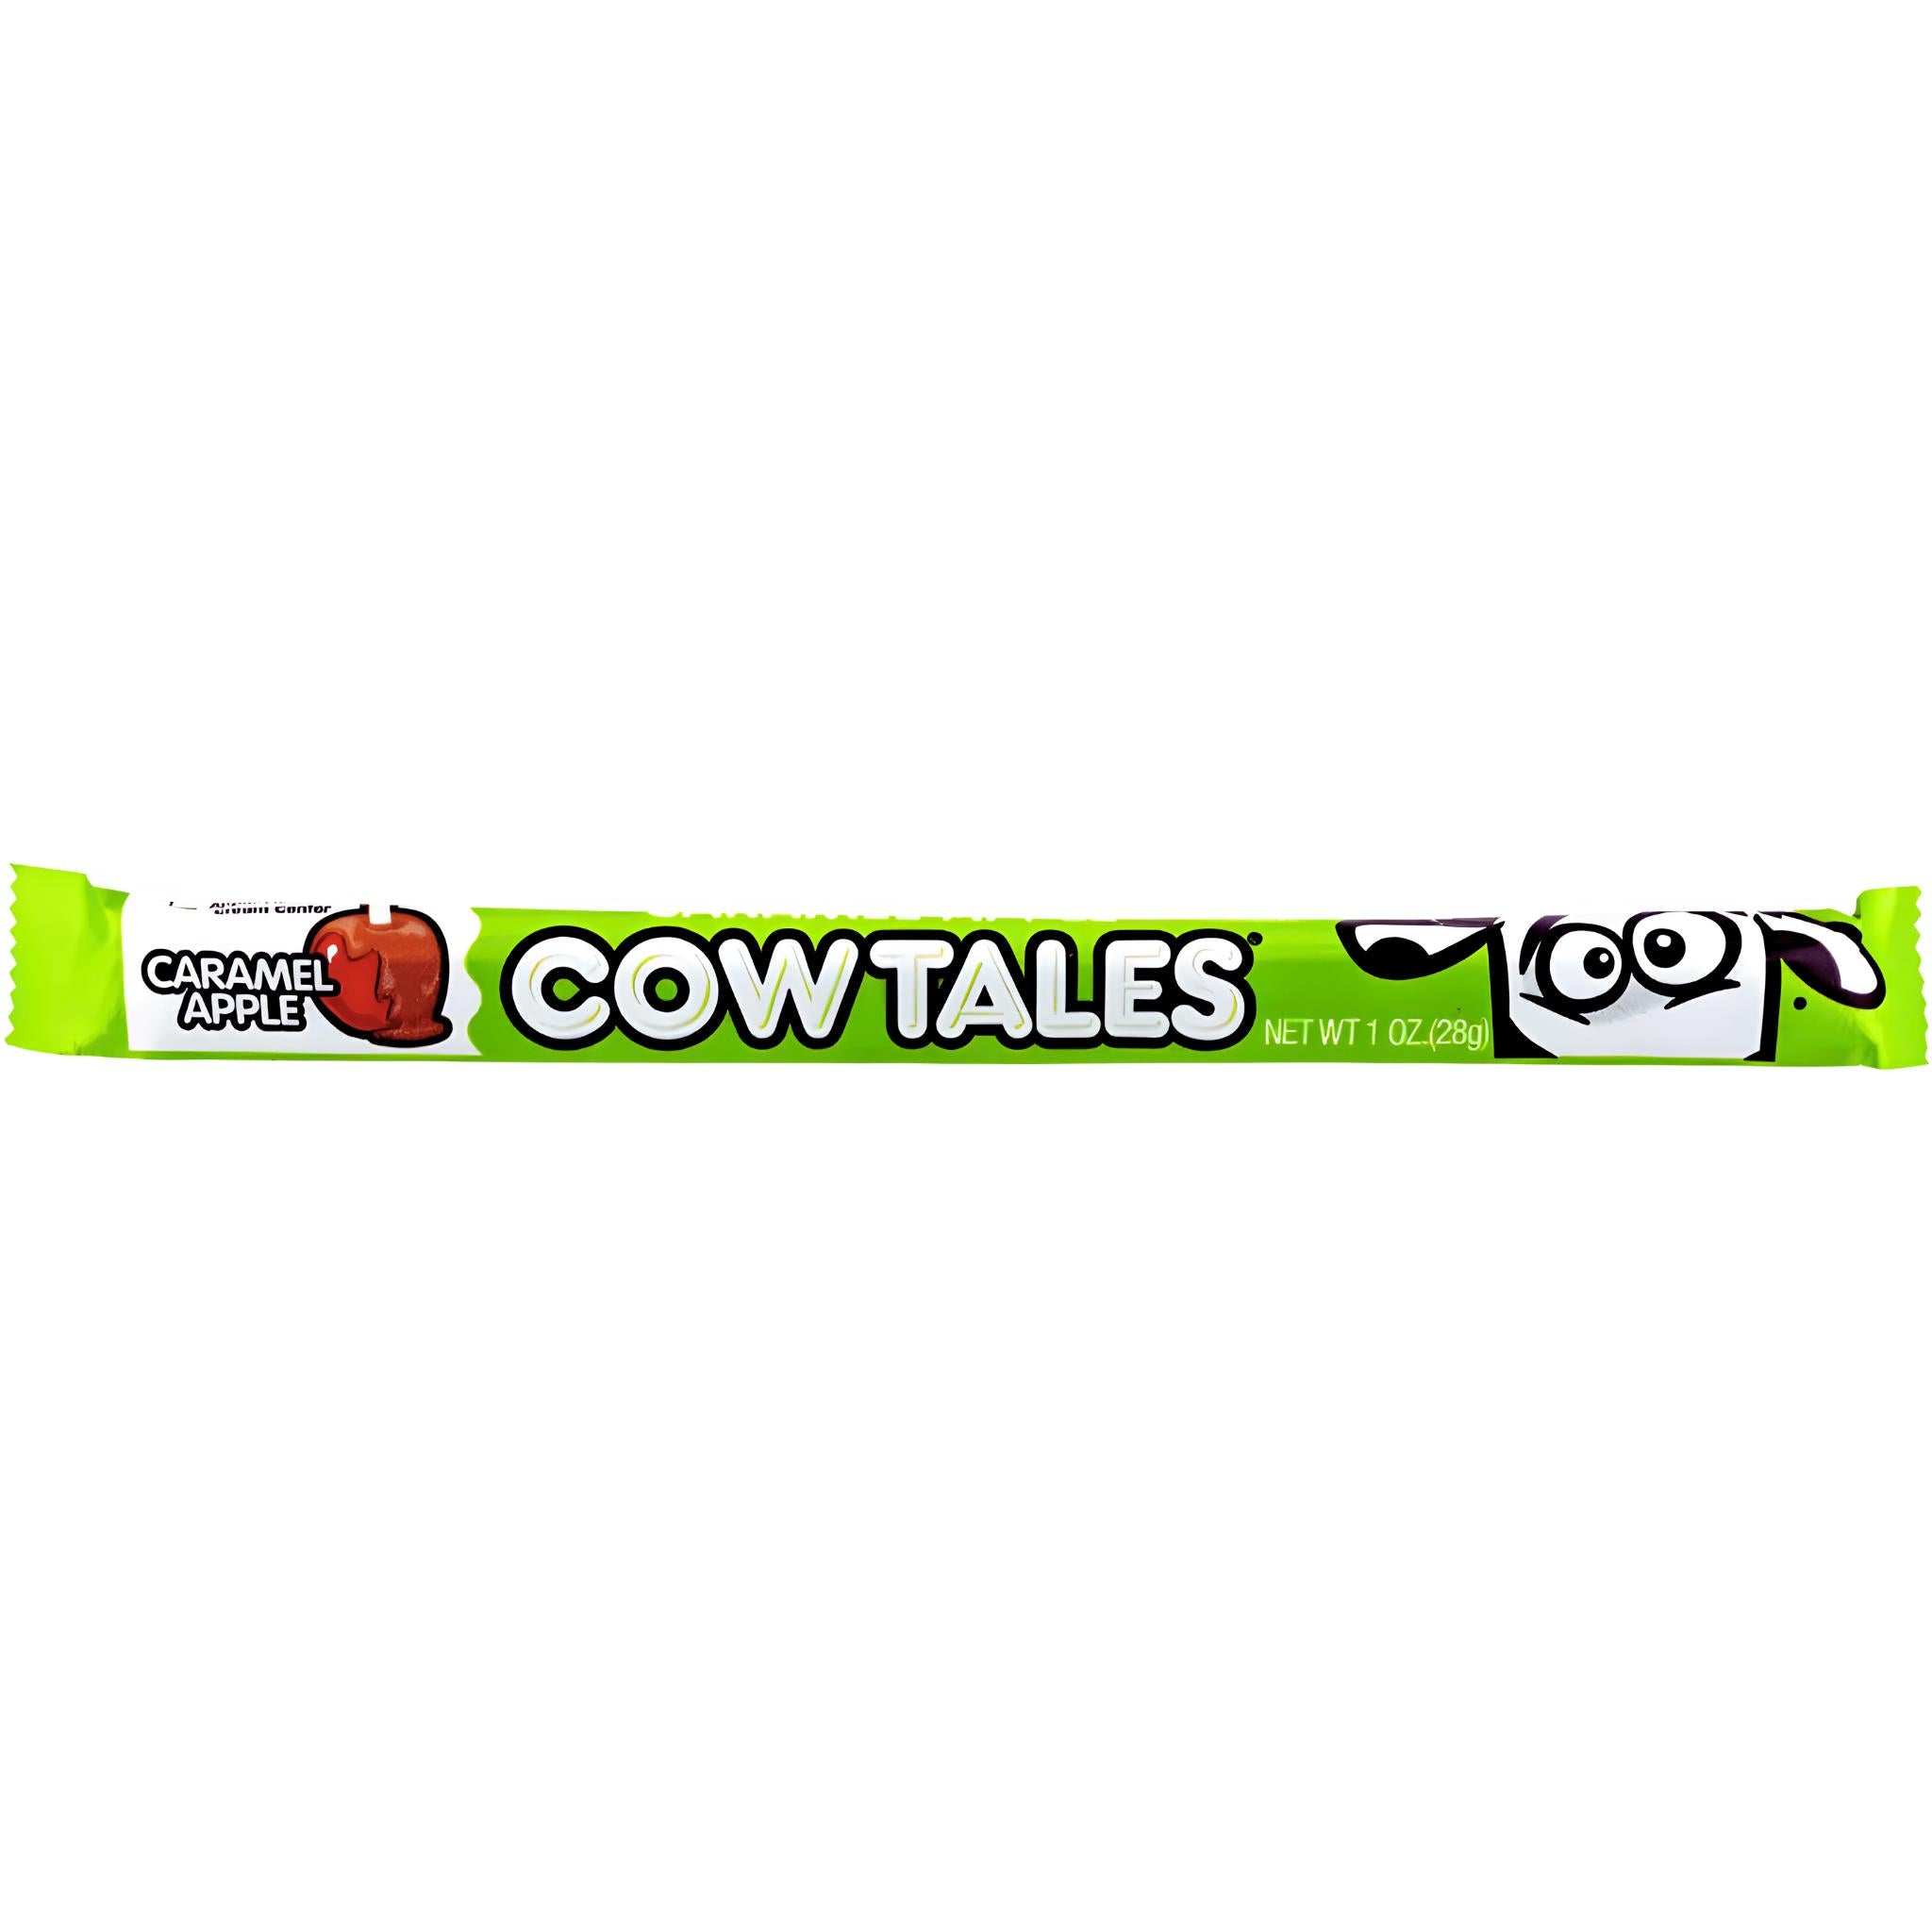 Goetze's Caramel Apple Cow Tales - 28g